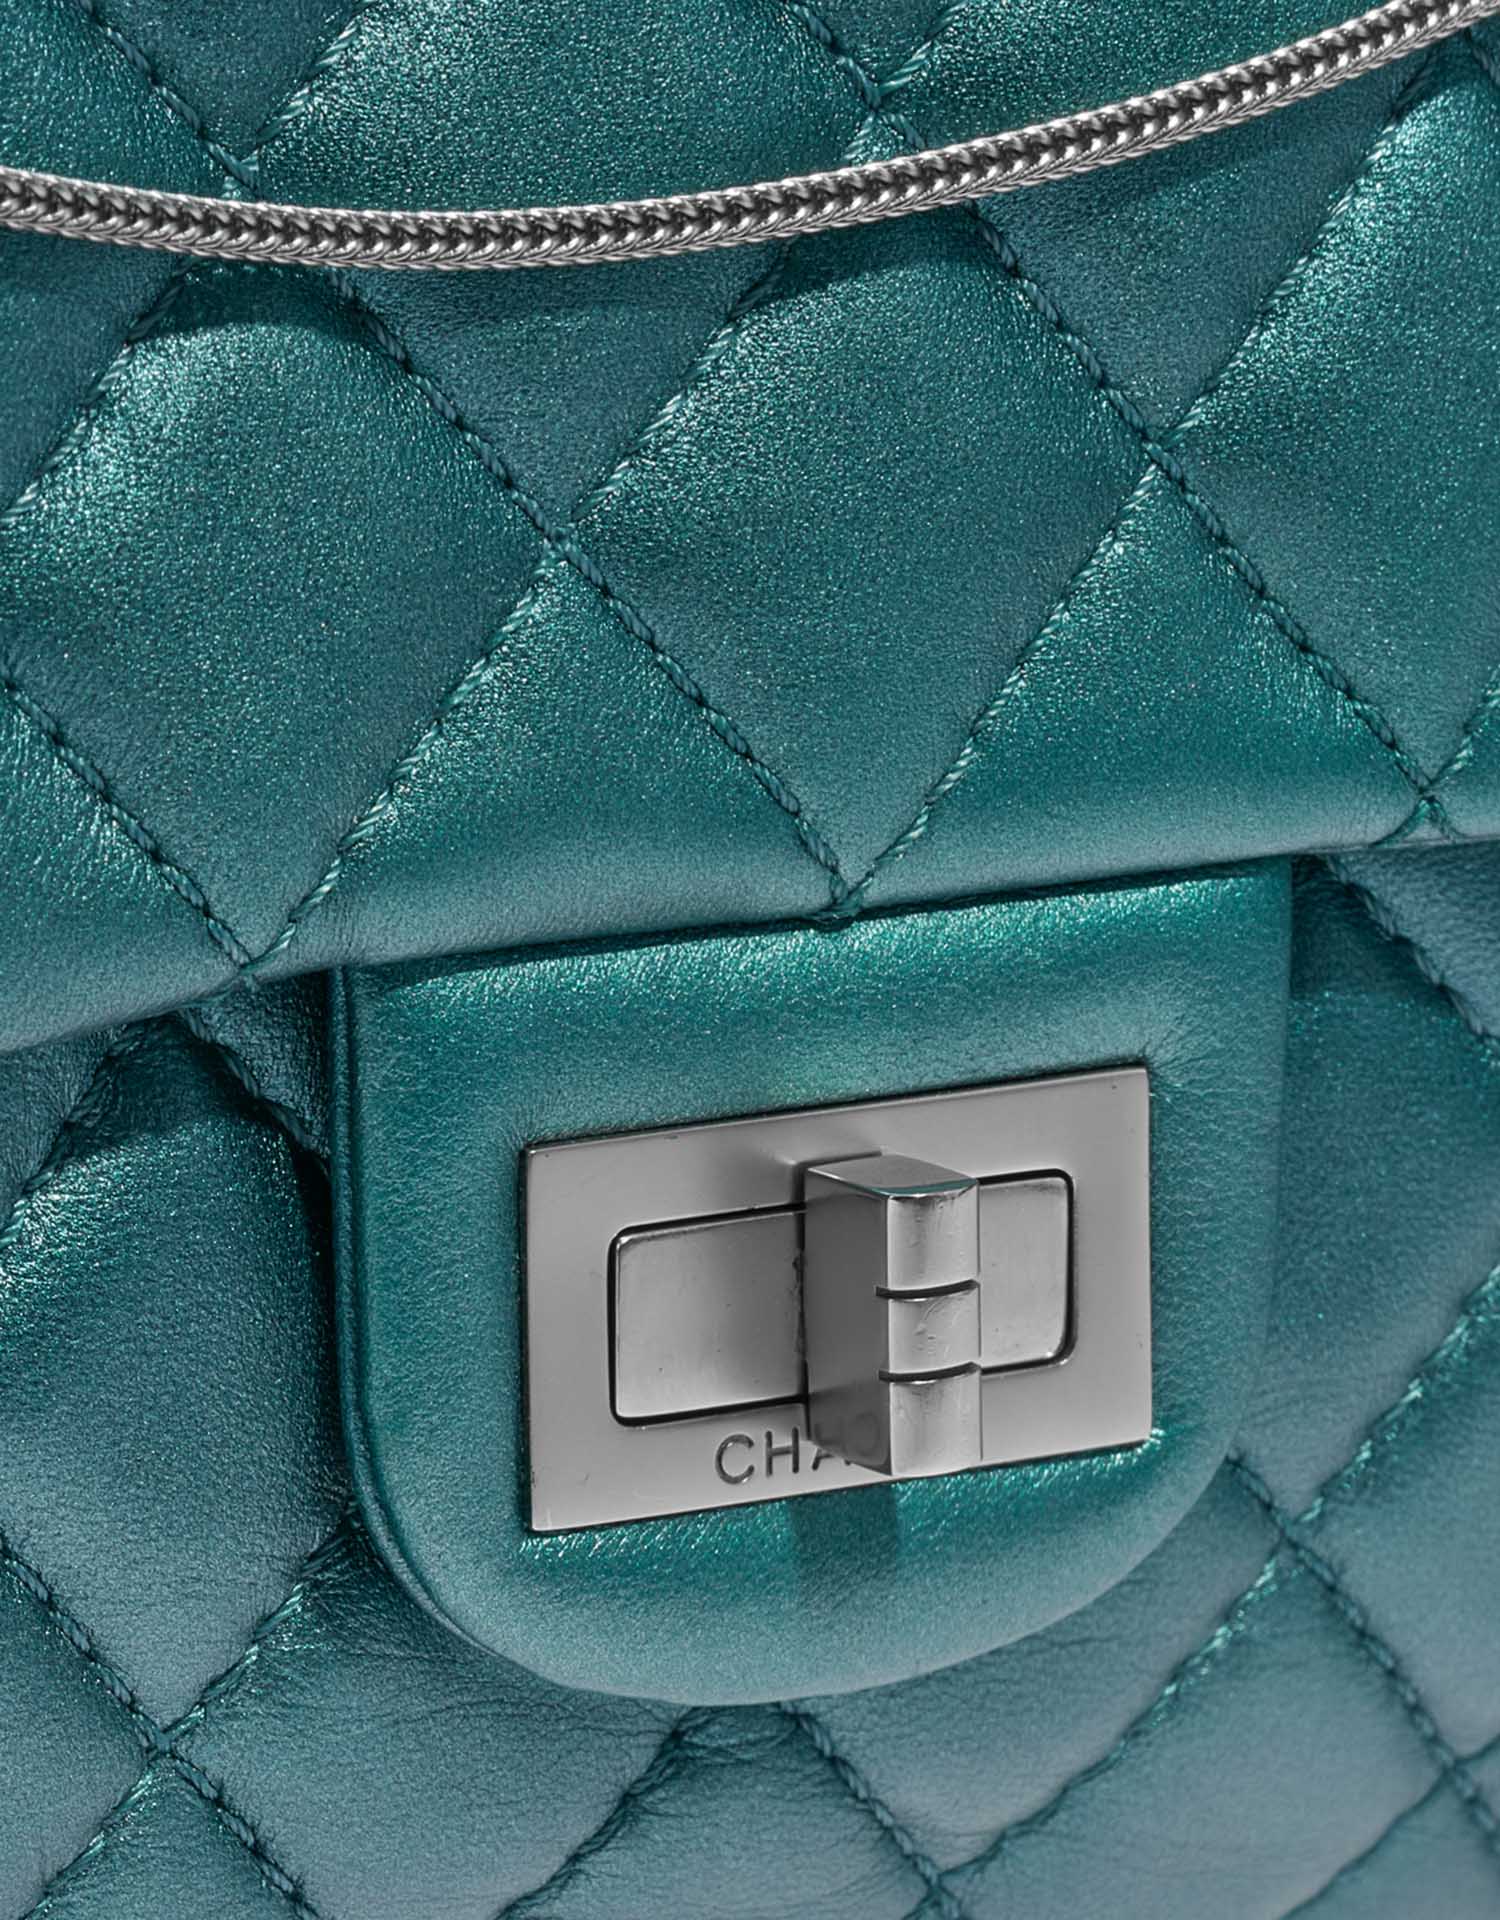 Gebrauchte Chanel Tasche 2.55 Reissue 226 Lammleder Metallic Blau Blau Verschluss-System | Verkaufen Sie Ihre Designer-Tasche auf Saclab.com